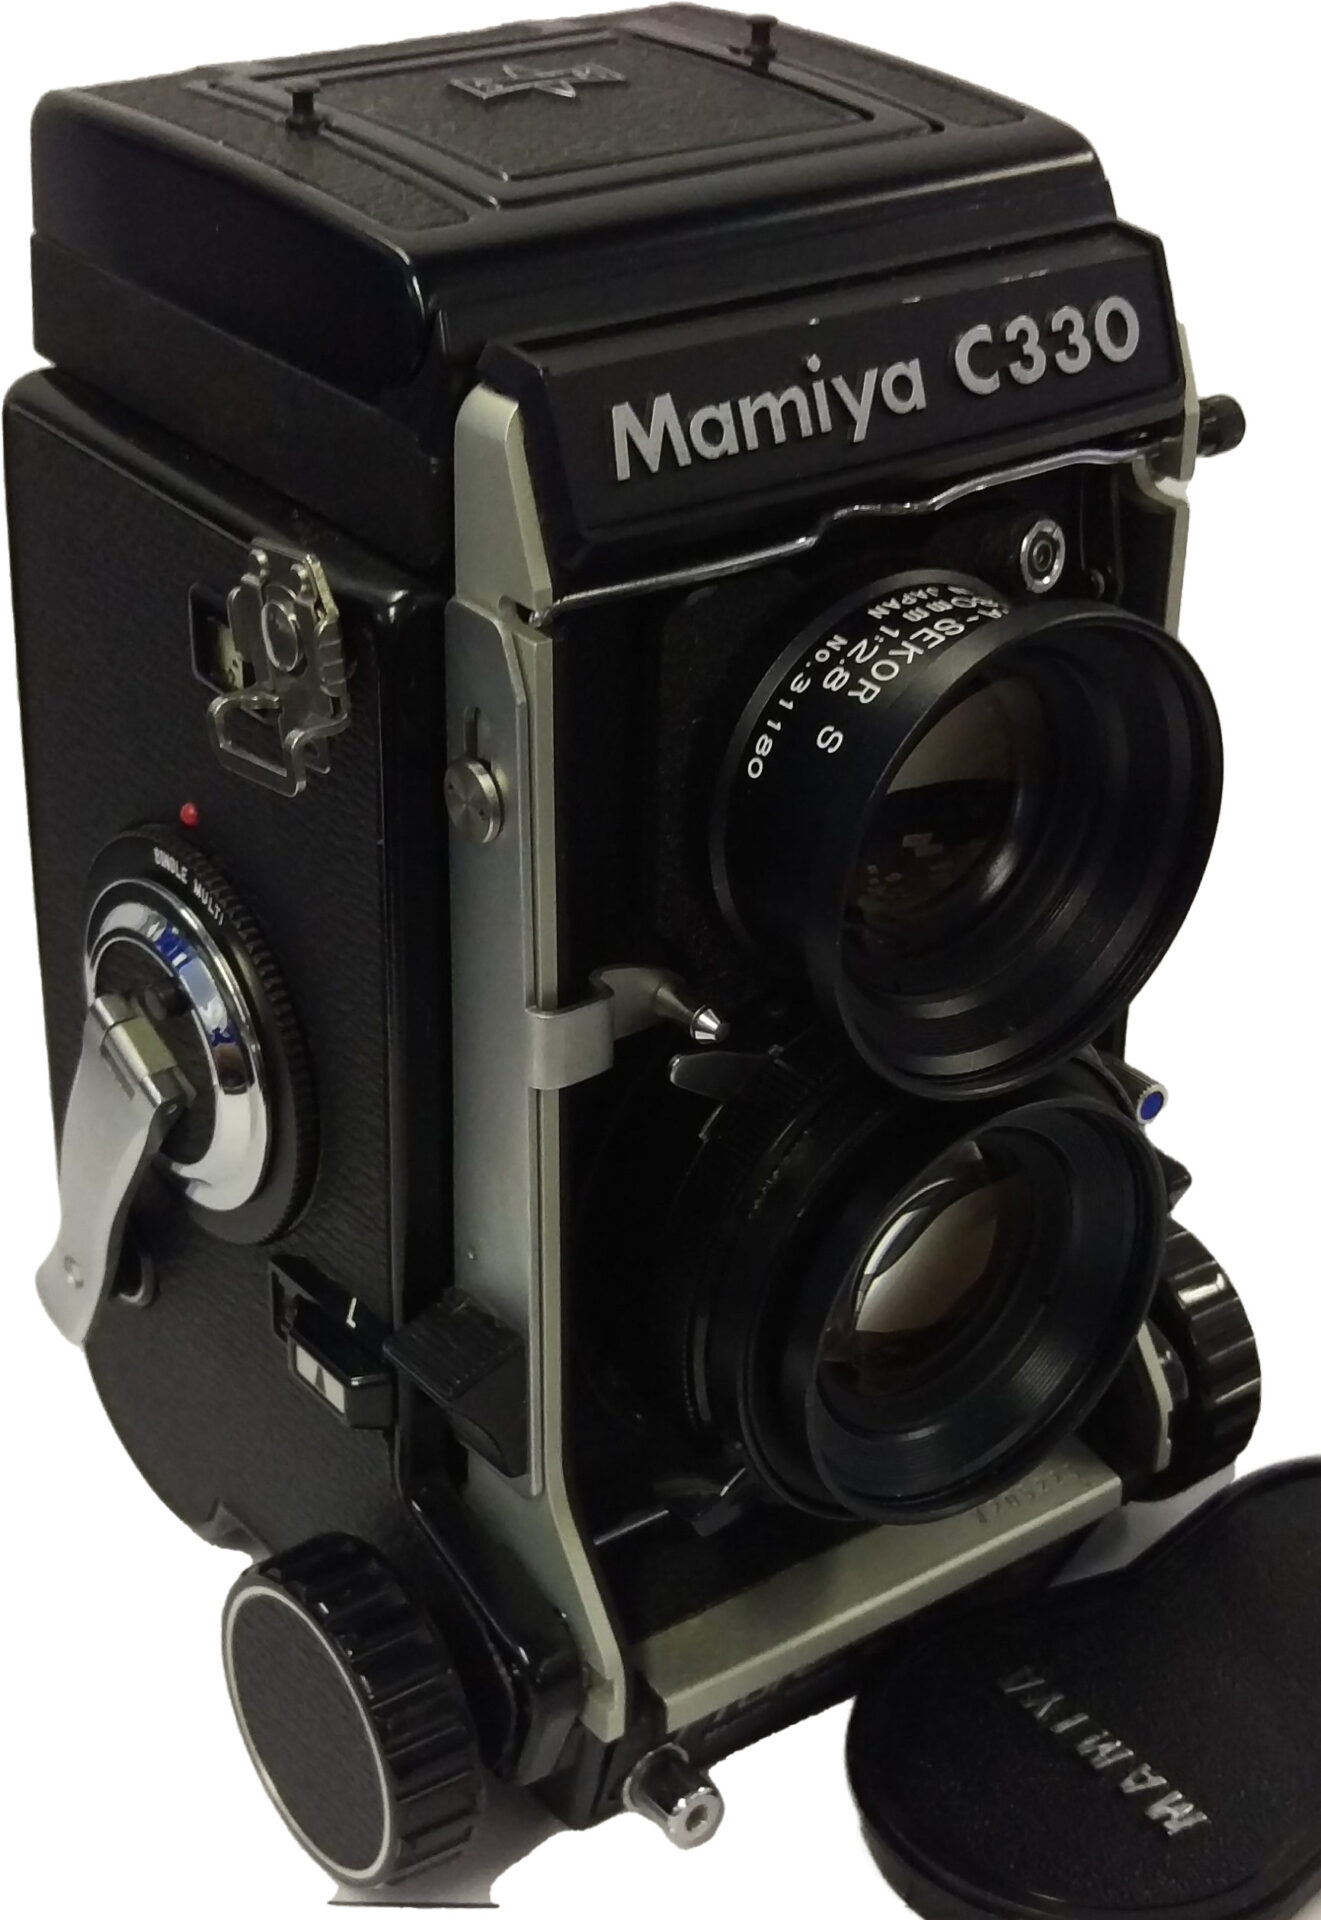 【Mamiya:C330 PROFESSIONAL S】のカメラ出張買取実績